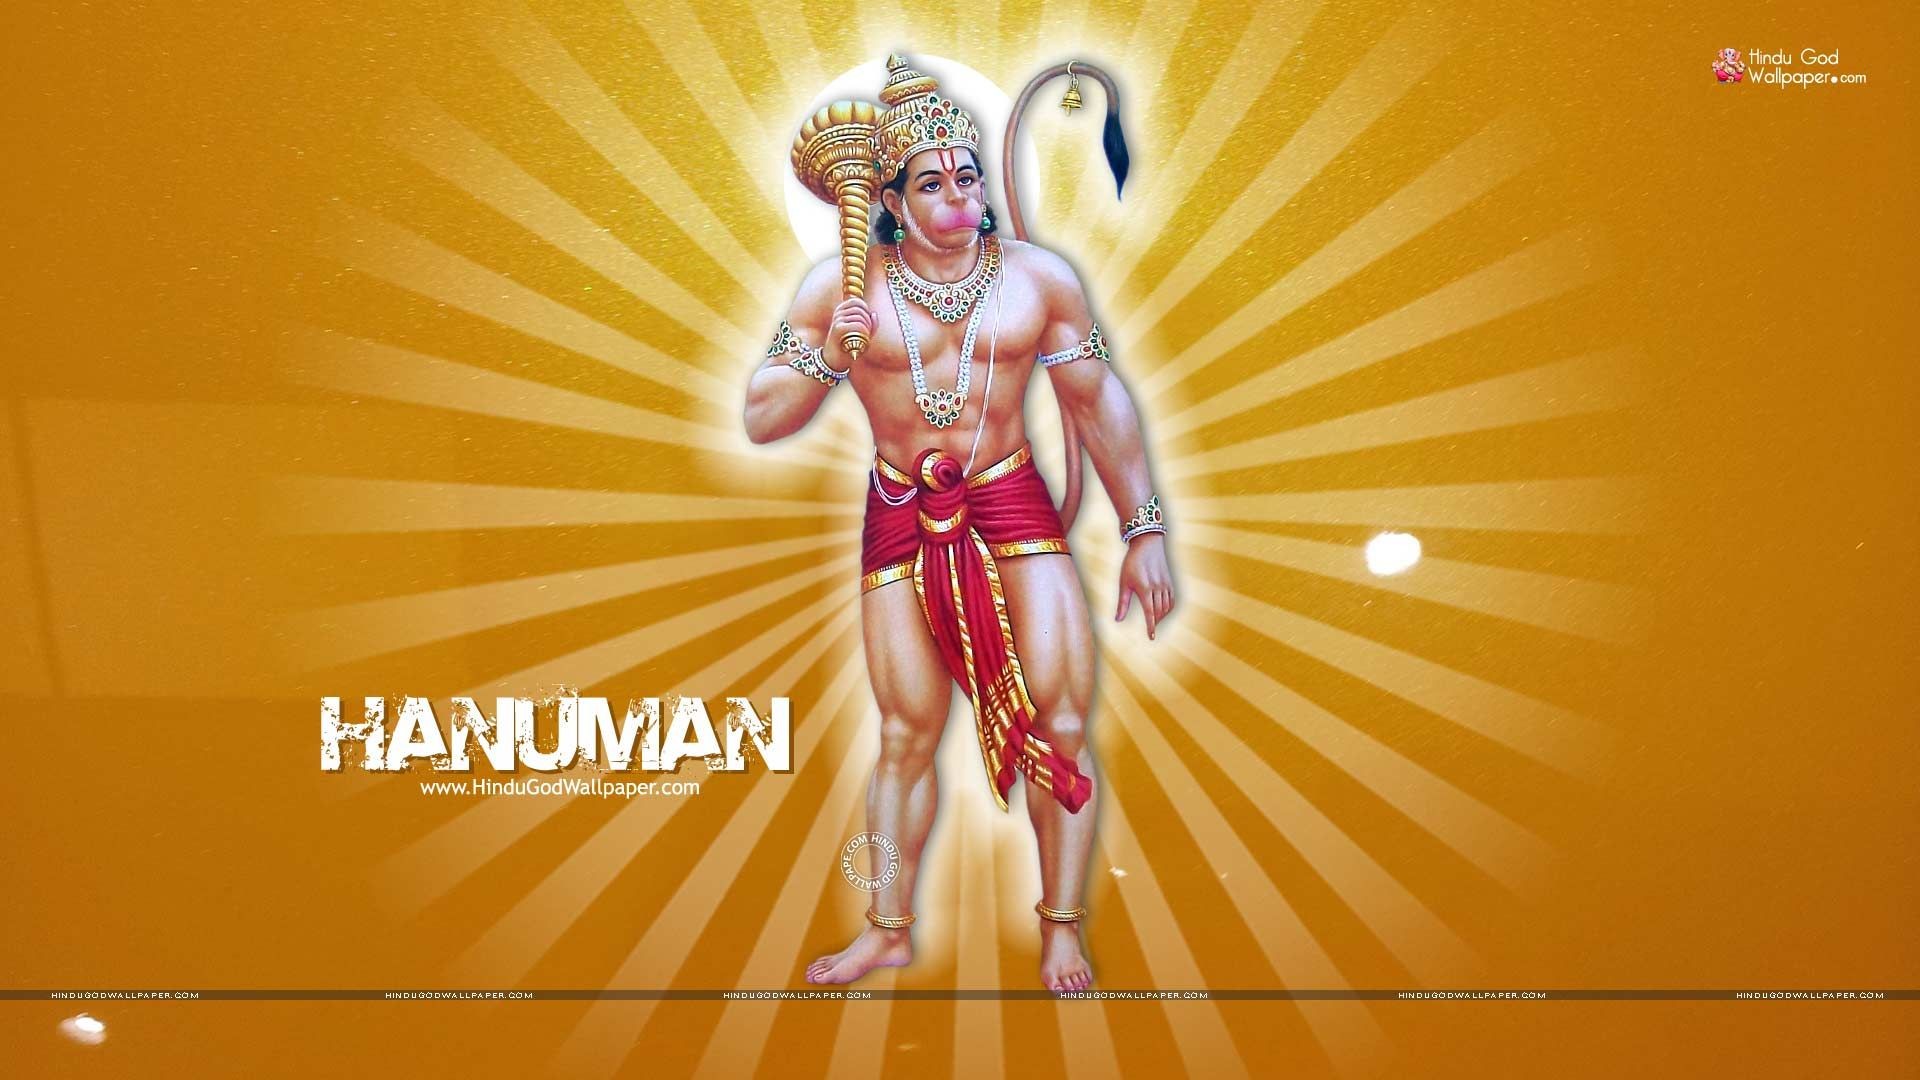 Then Hanuman Hd Wallpaper - Full Hd Hanuman Hd Wallpapers 1080p - 1920x1080  Wallpaper 